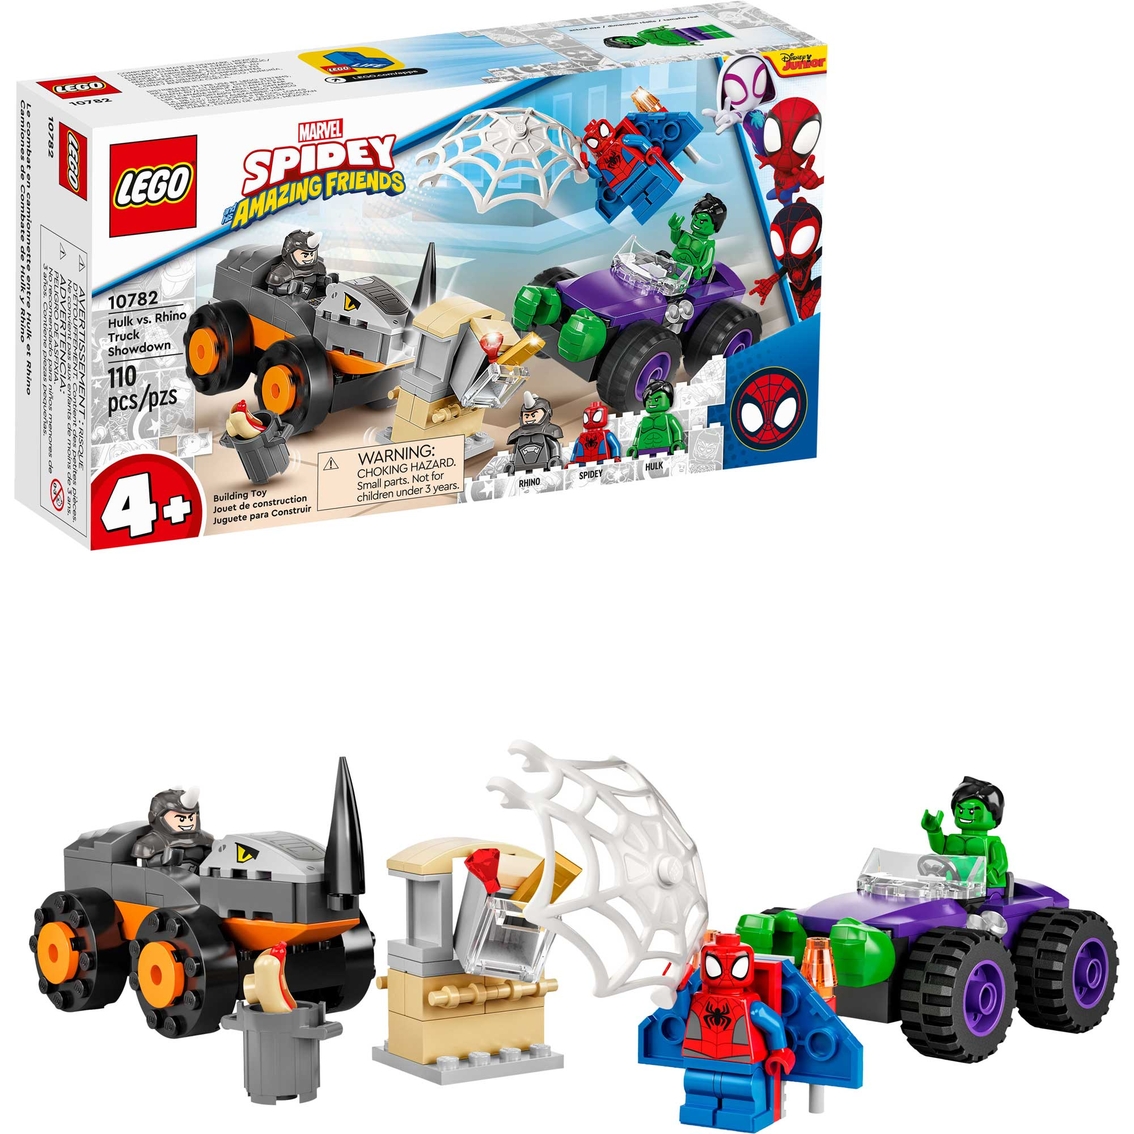 LEGO Spidey: Hulk vs. Rhino Truck Showdown 10782 - Image 3 of 3